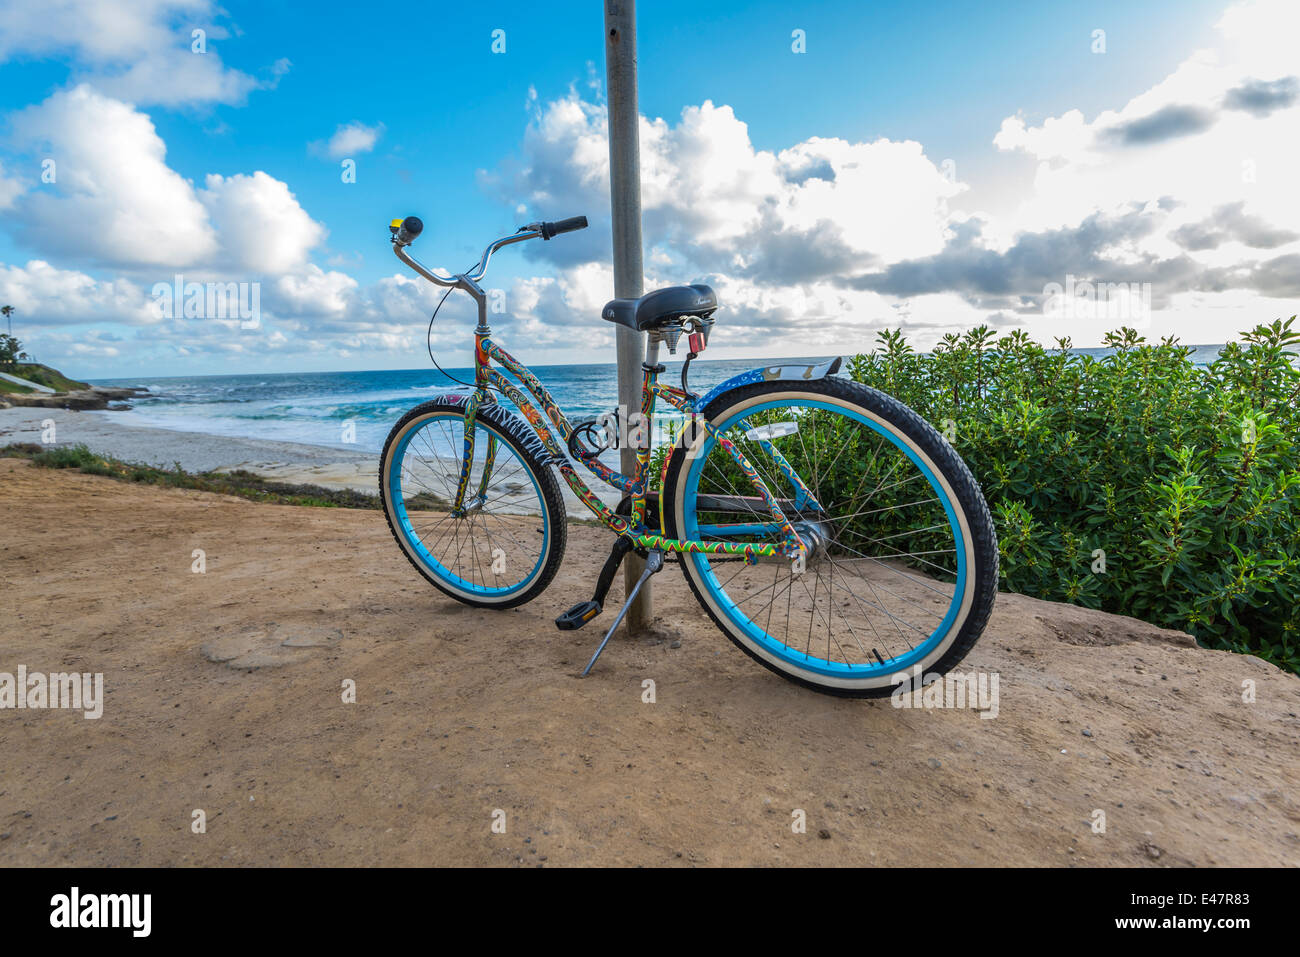 Bunte Fahrrad angekettet an einem Metallstab. Windansea Beach, La Jolla, Kalifornien, Vereinigte Staaten von Amerika. Stockfoto